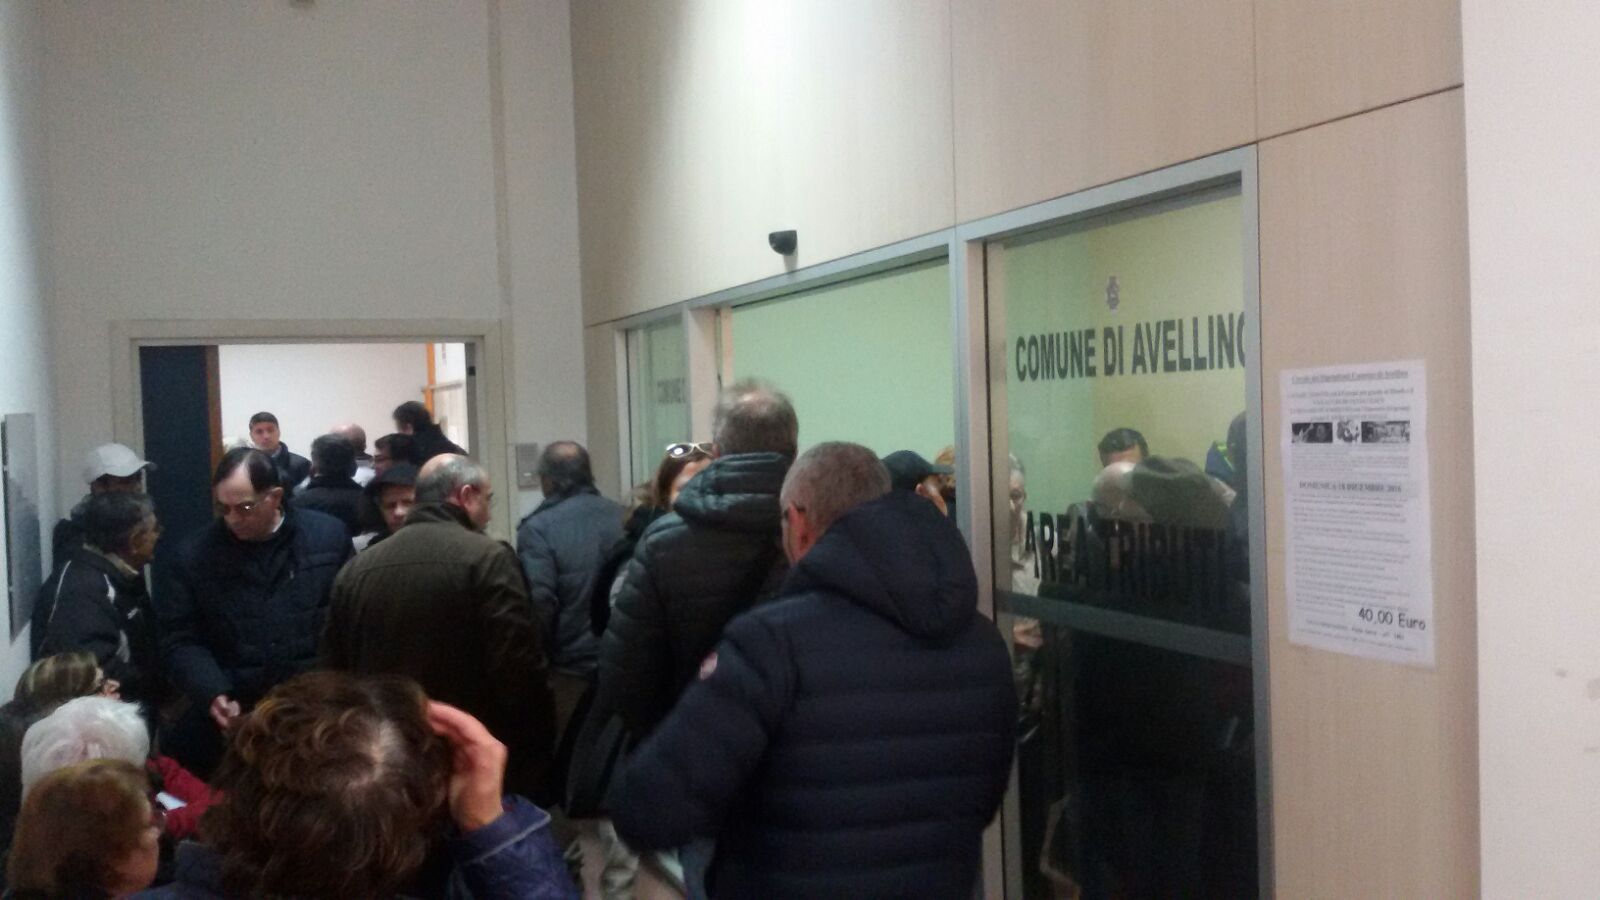 Avellino| Bollette “pazze”, la protesta dei cittadini in Comune